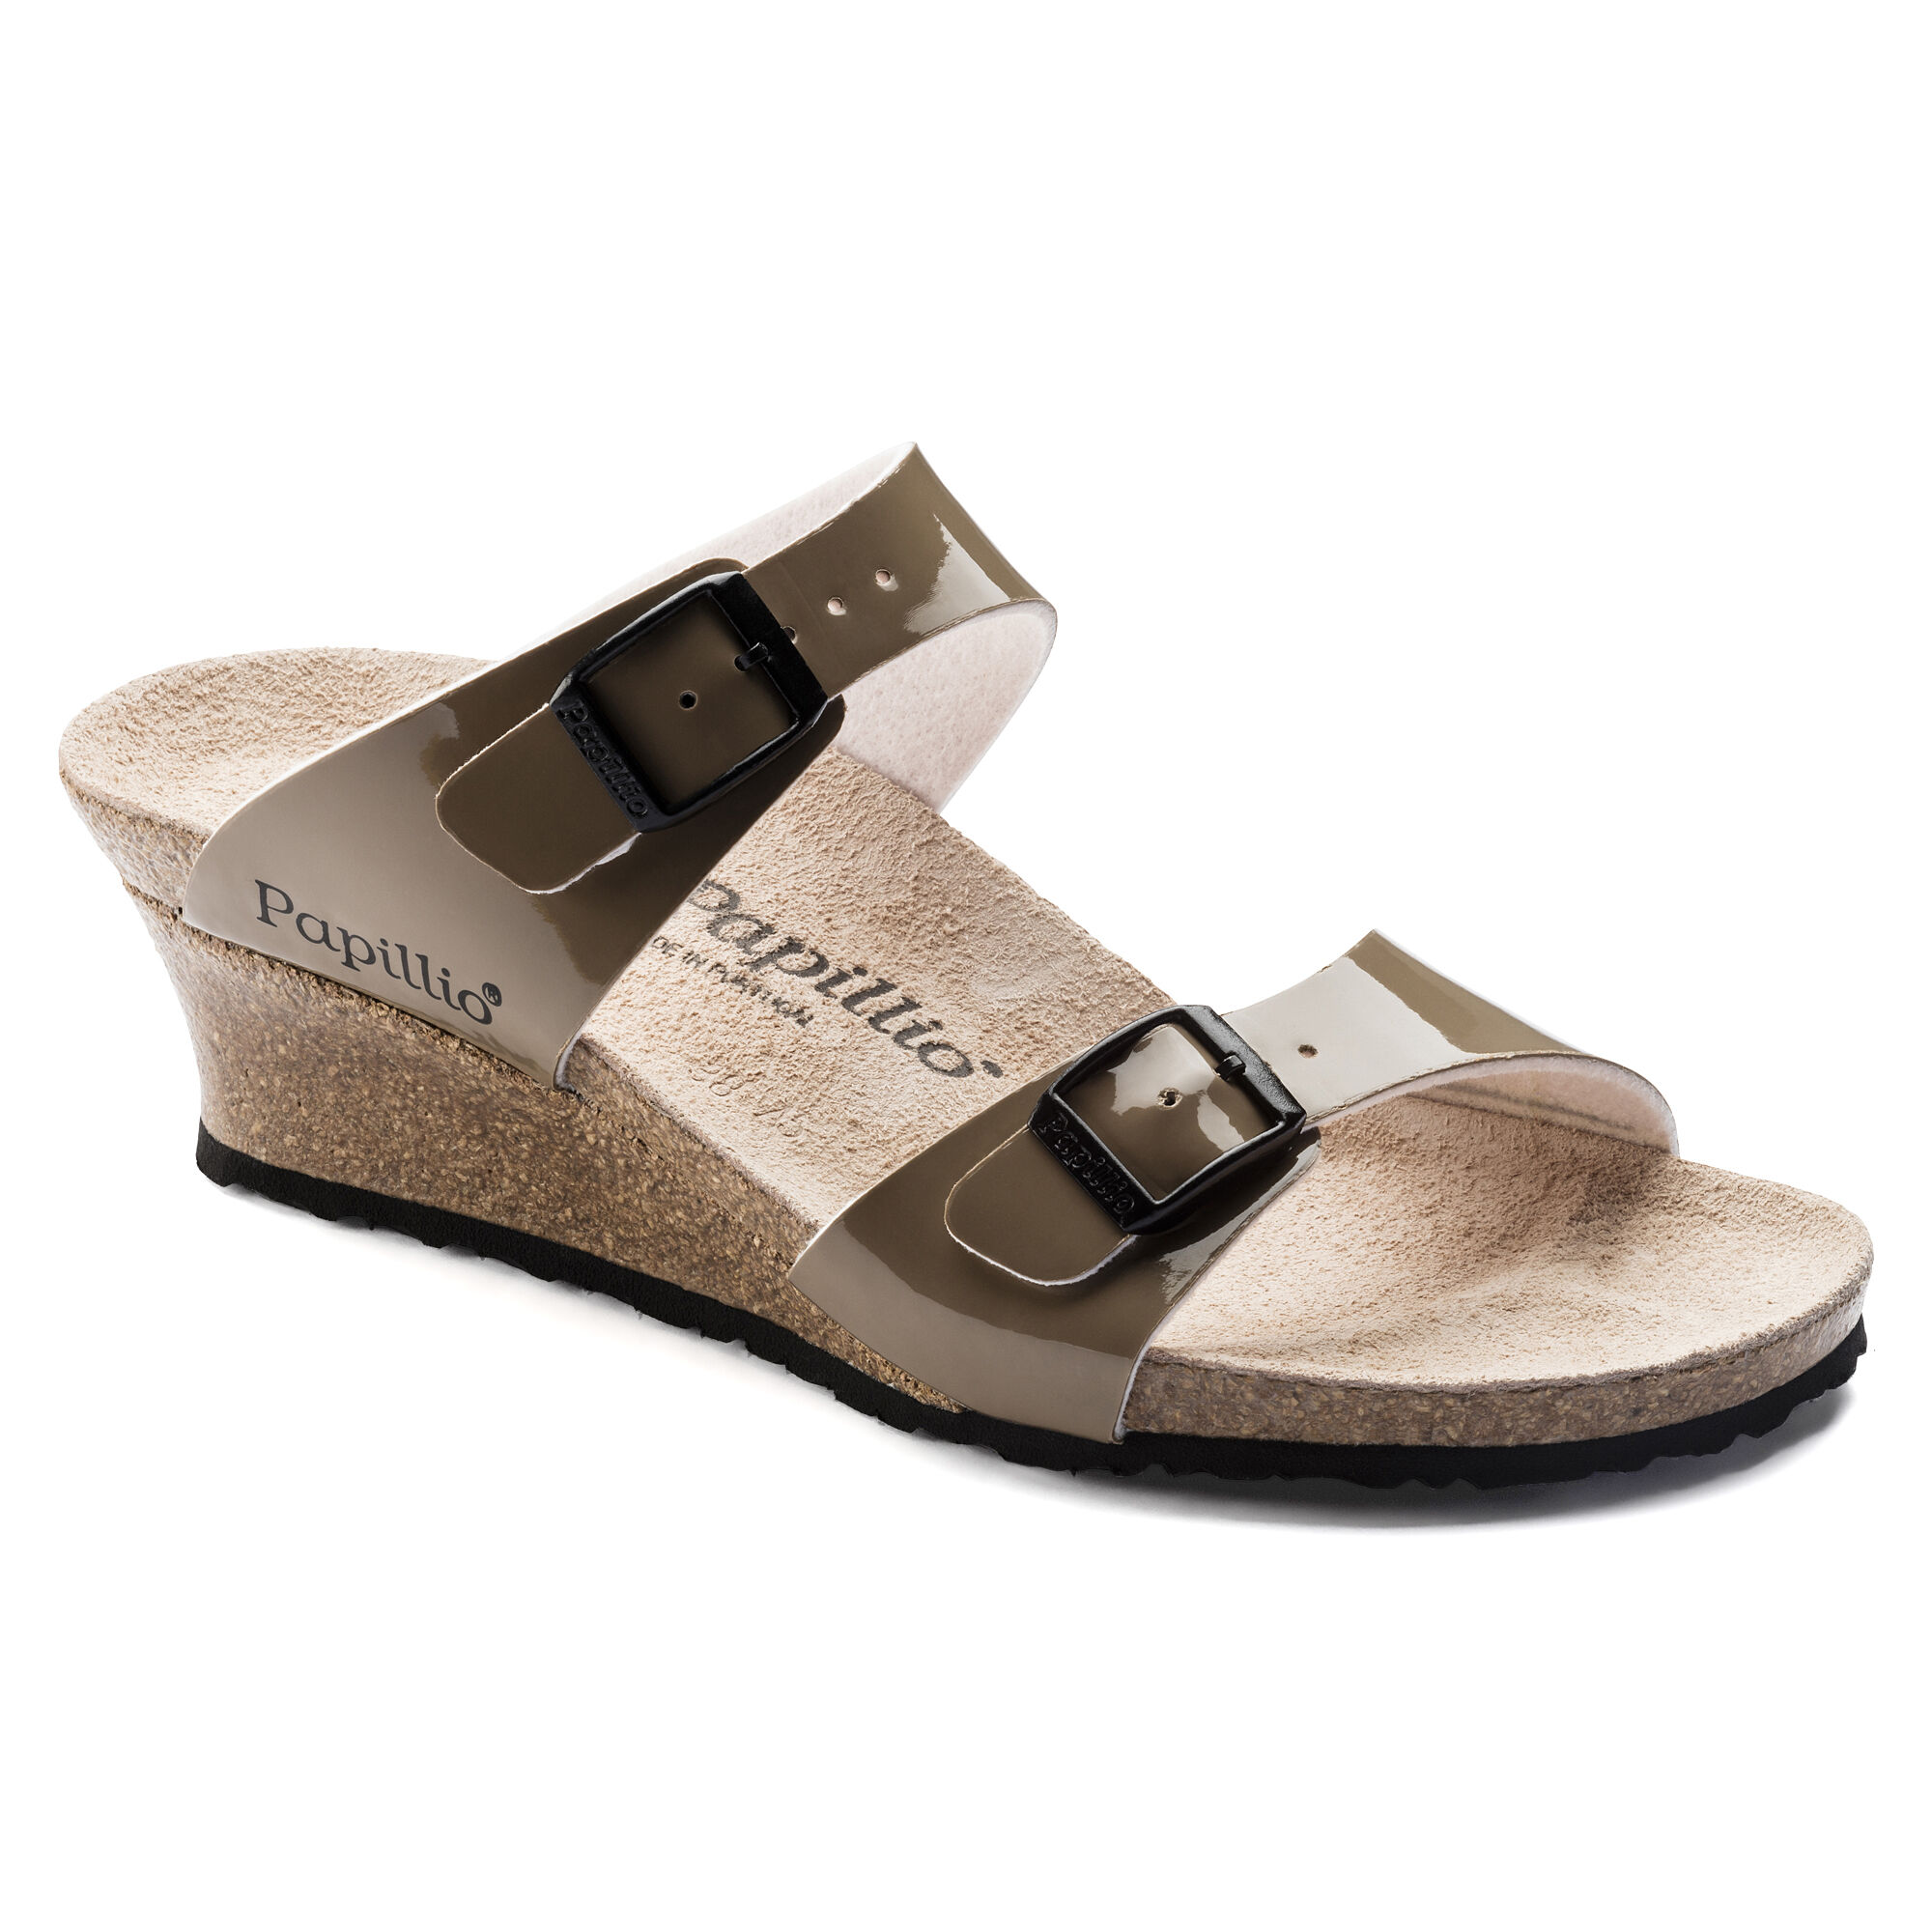 birkenstock women's dorothy sandal